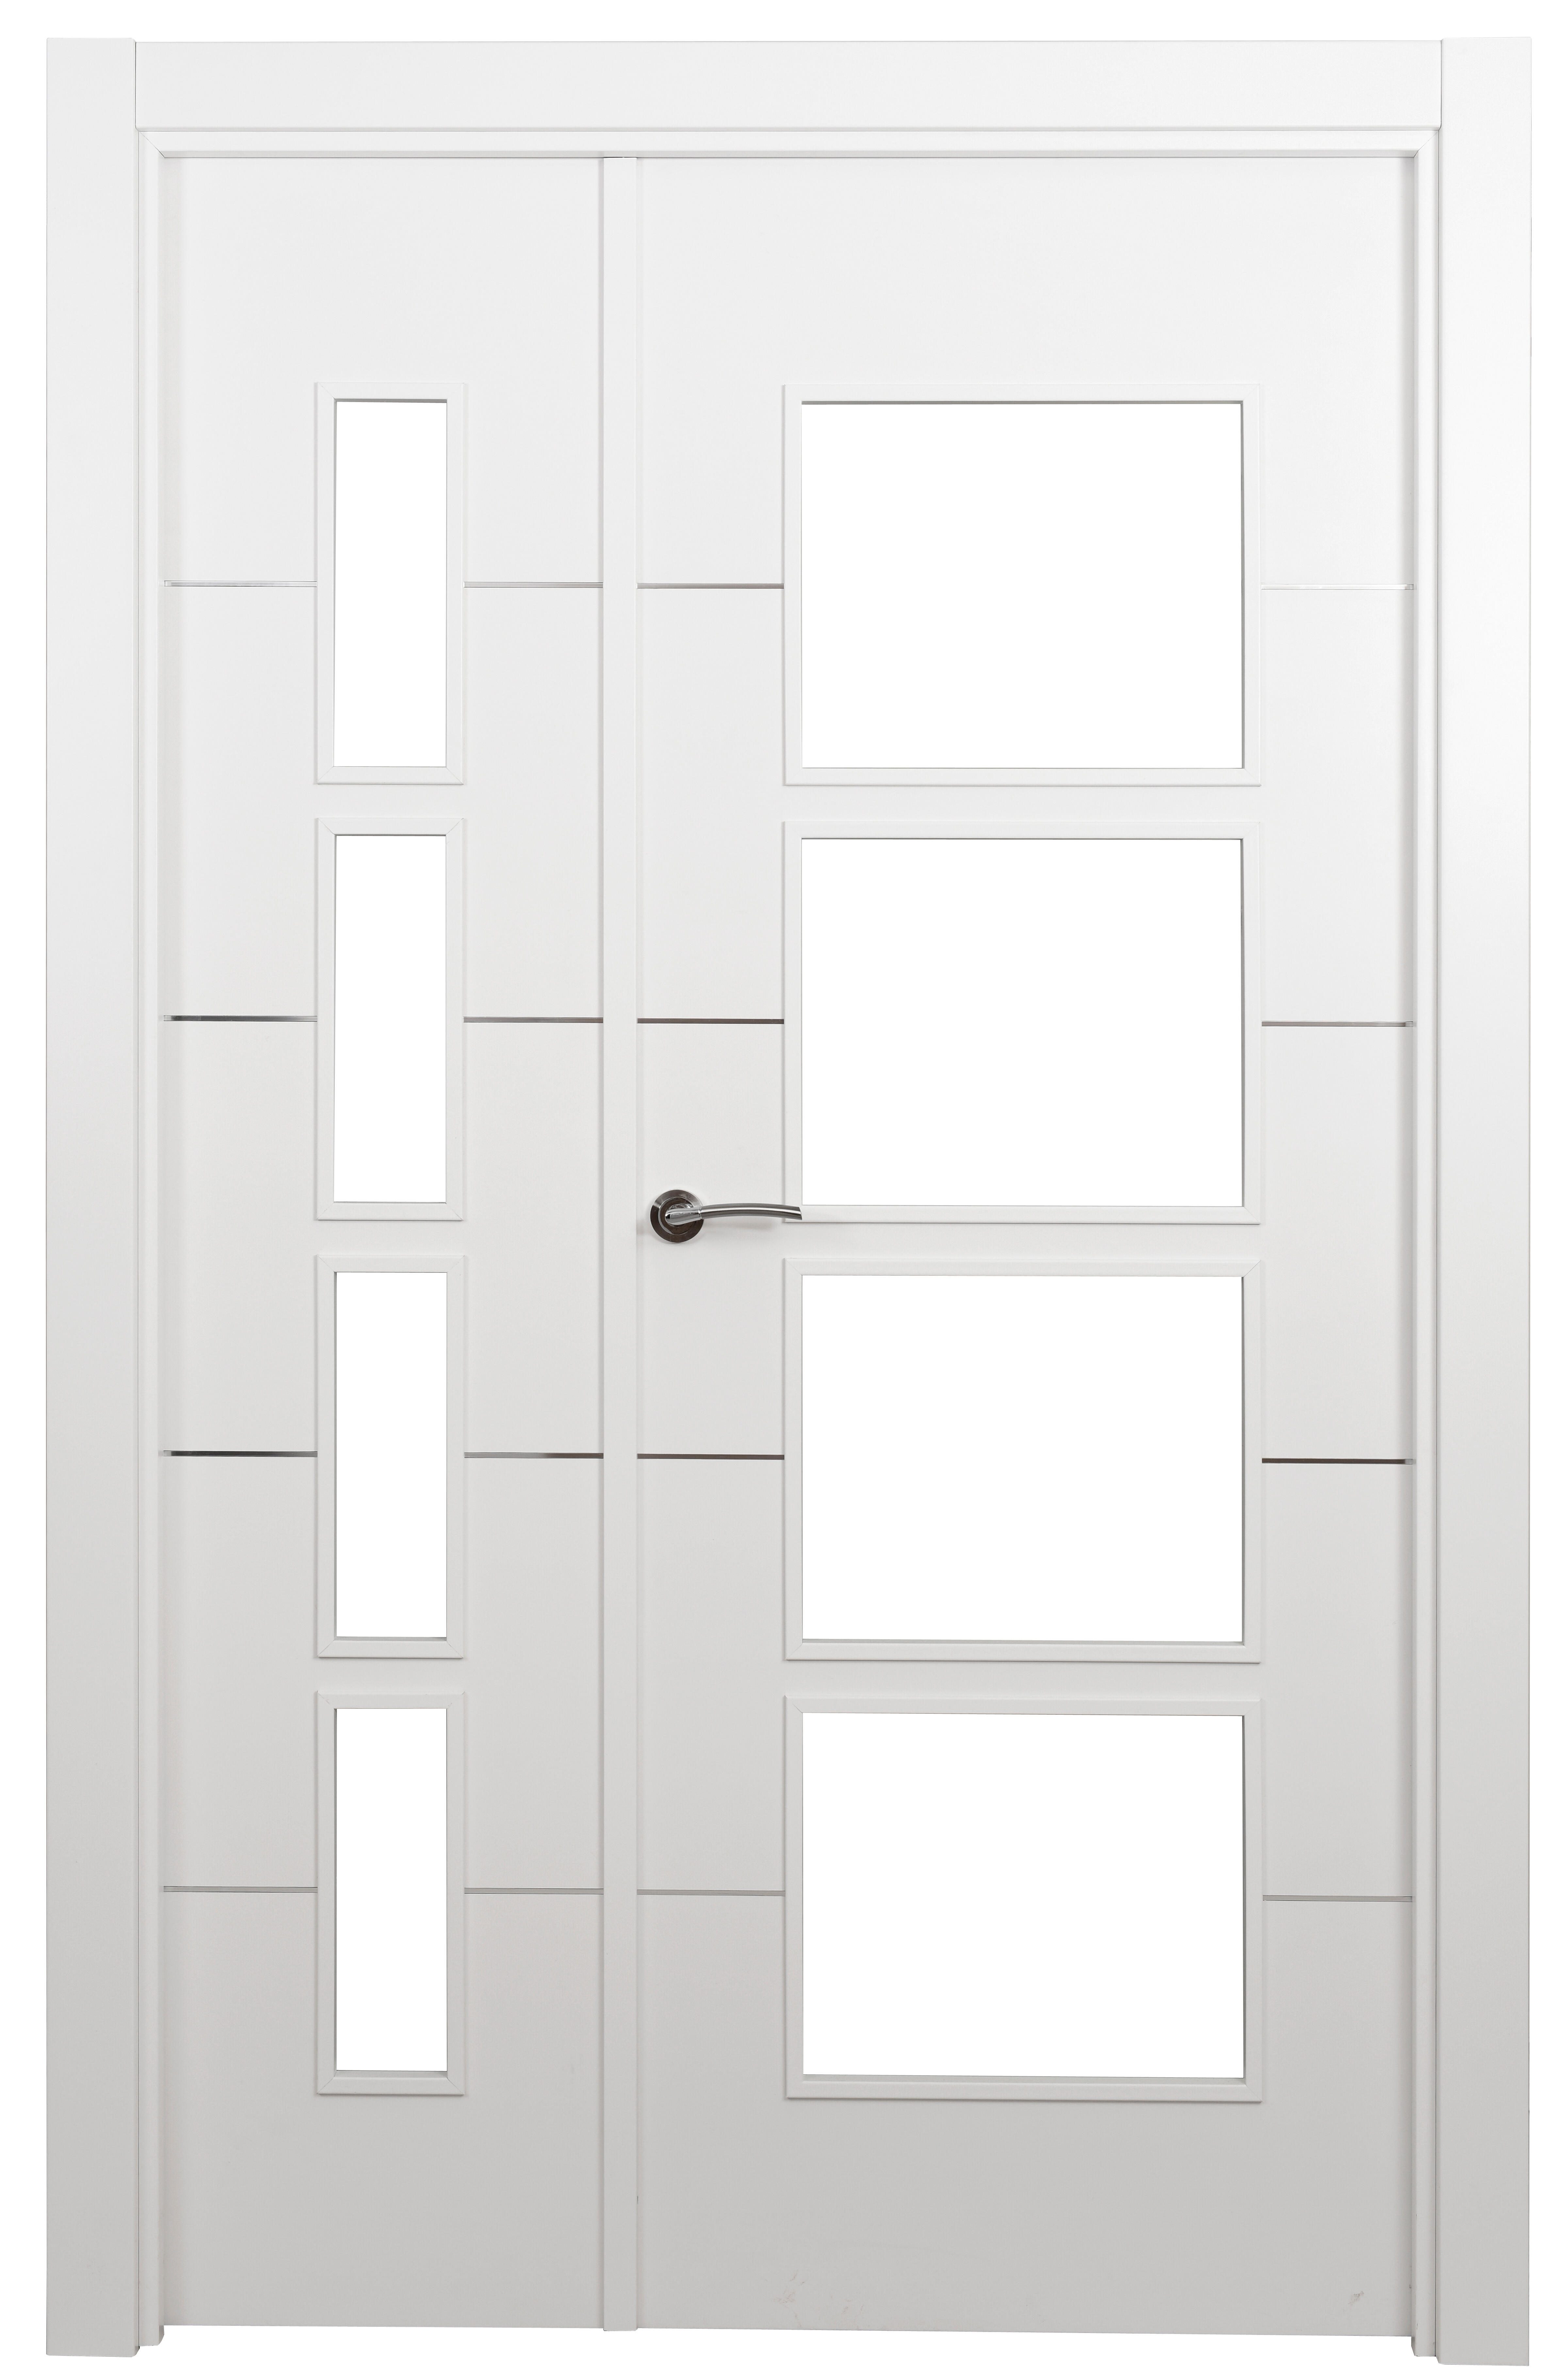 Puerta abatible paris blanca premium apertura izquierda de 9x105 cm